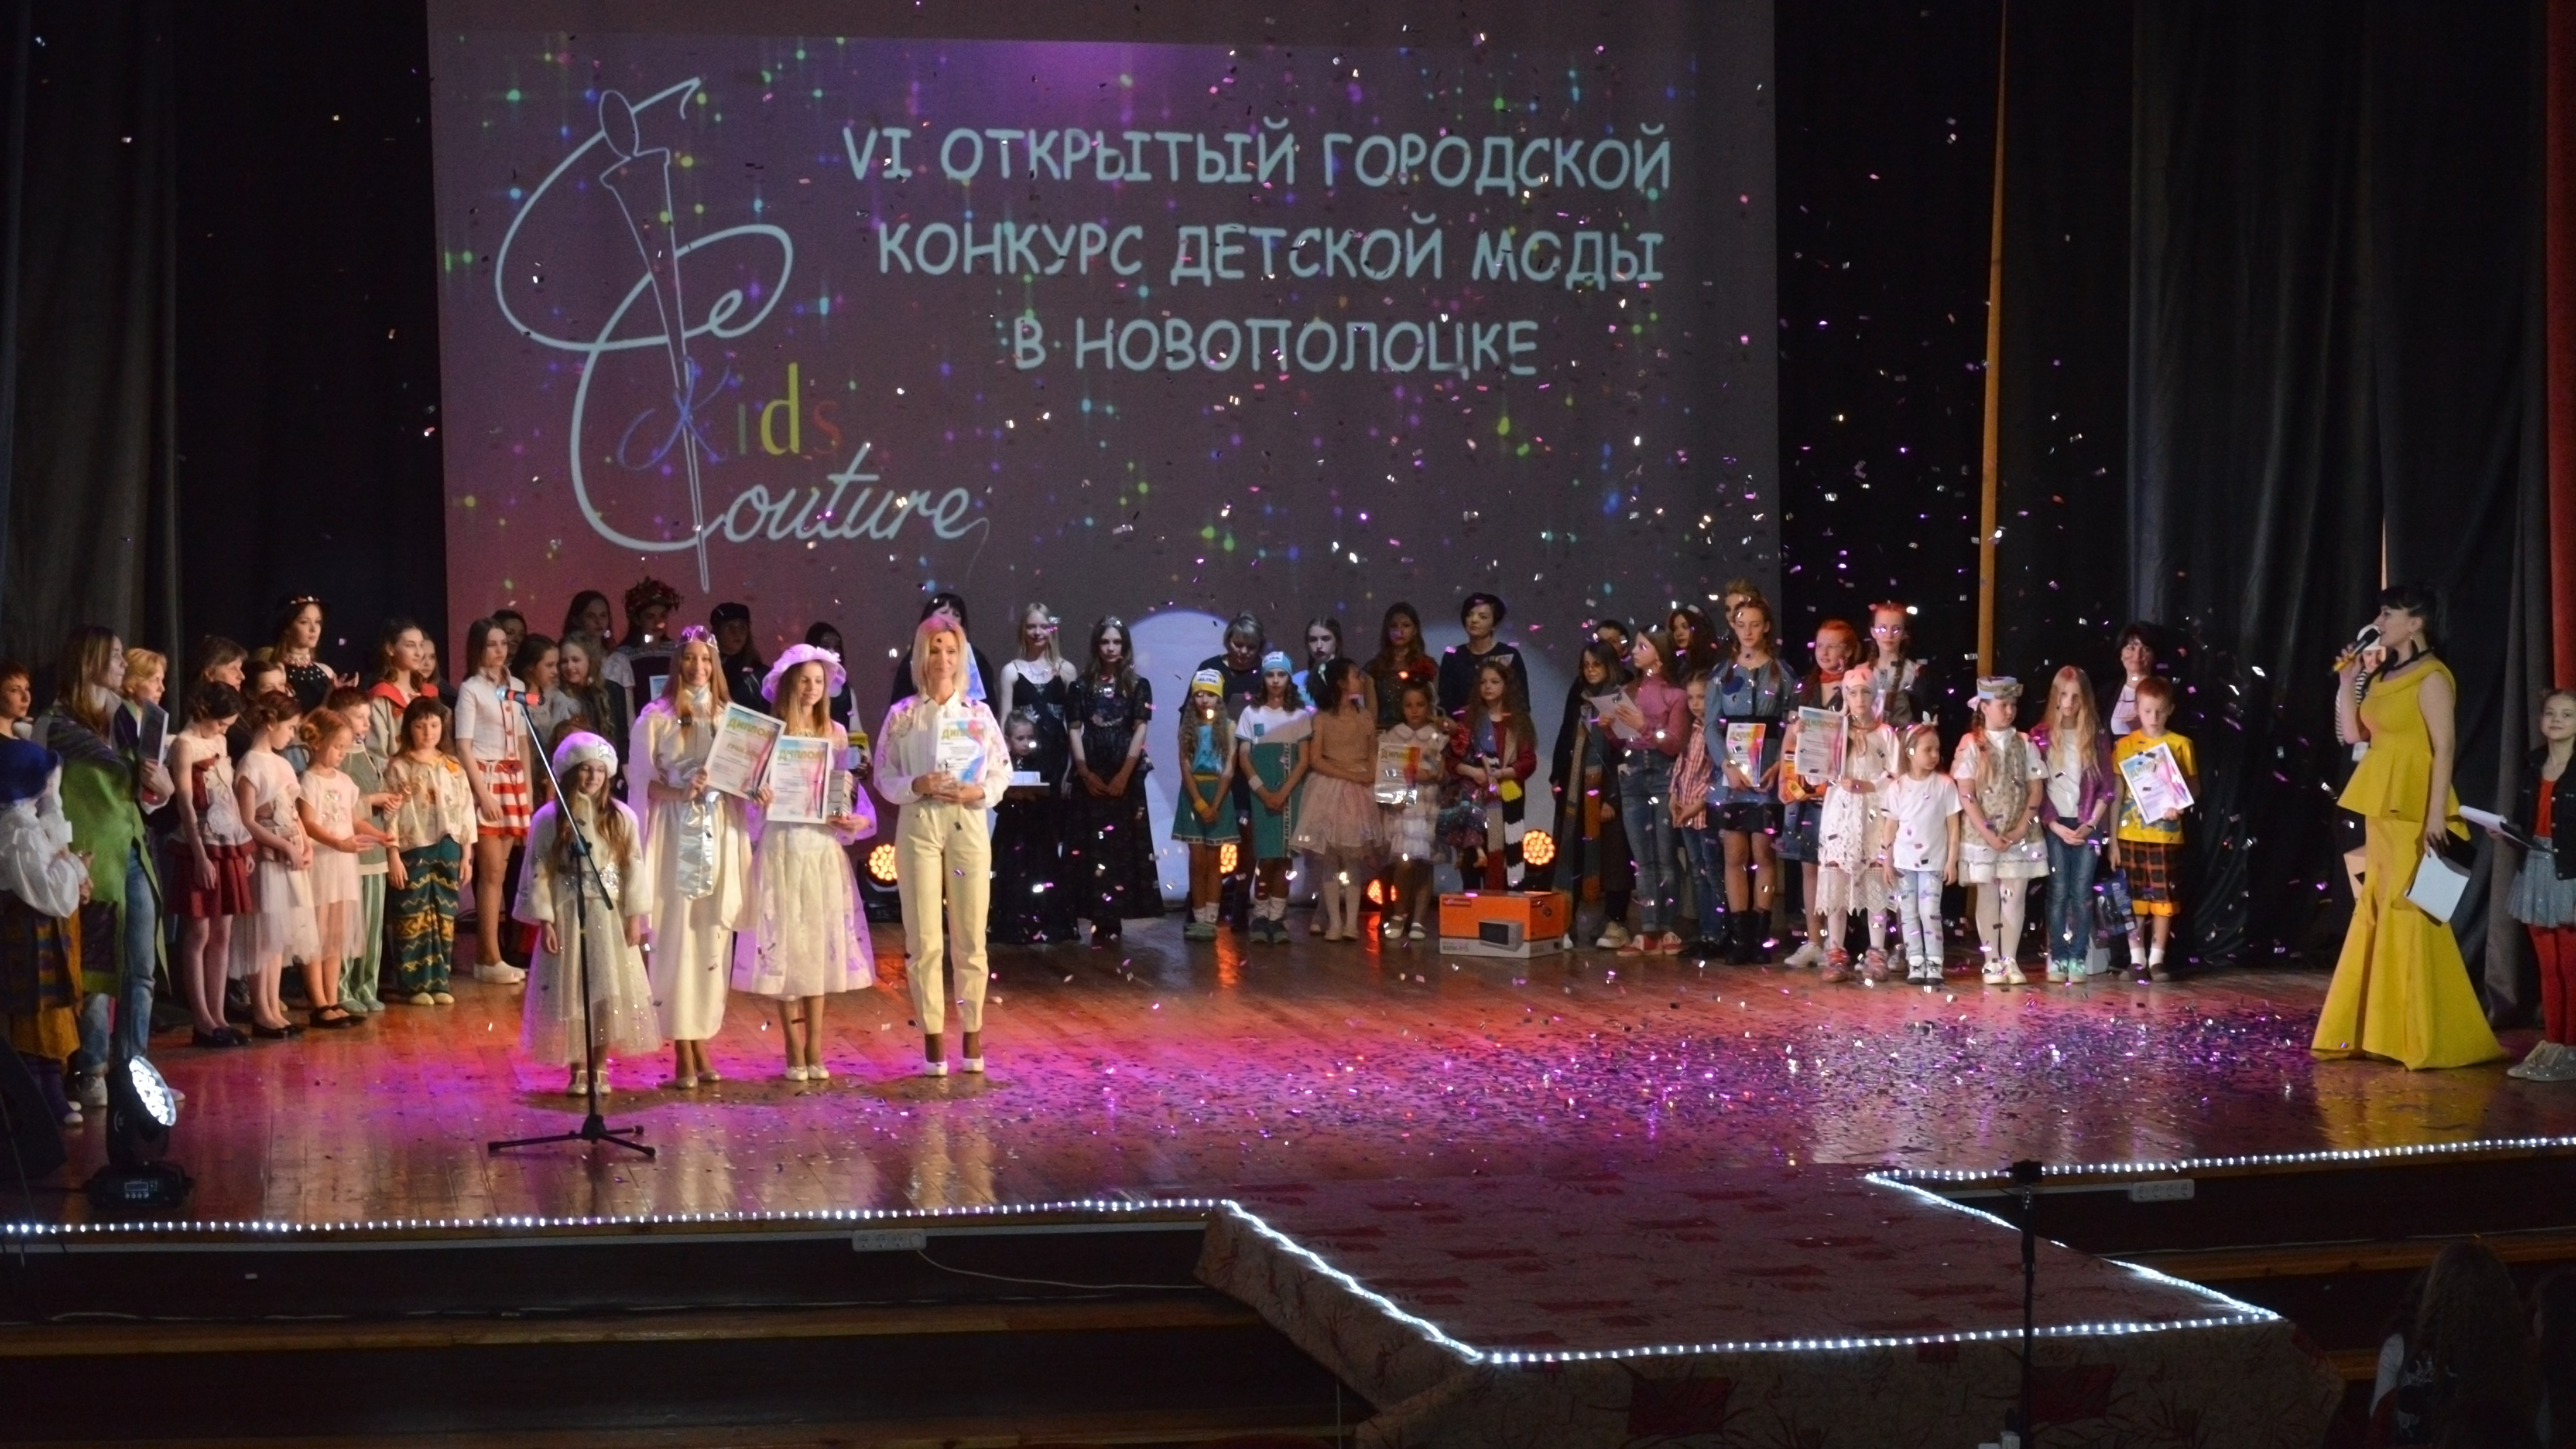 20 апреля на сцене Центра культуры г.Новополоцка 
состоялось захватывающее красочное шоу с участием лучших театров моды и молодых дизайнеров Беларуси (Видео)